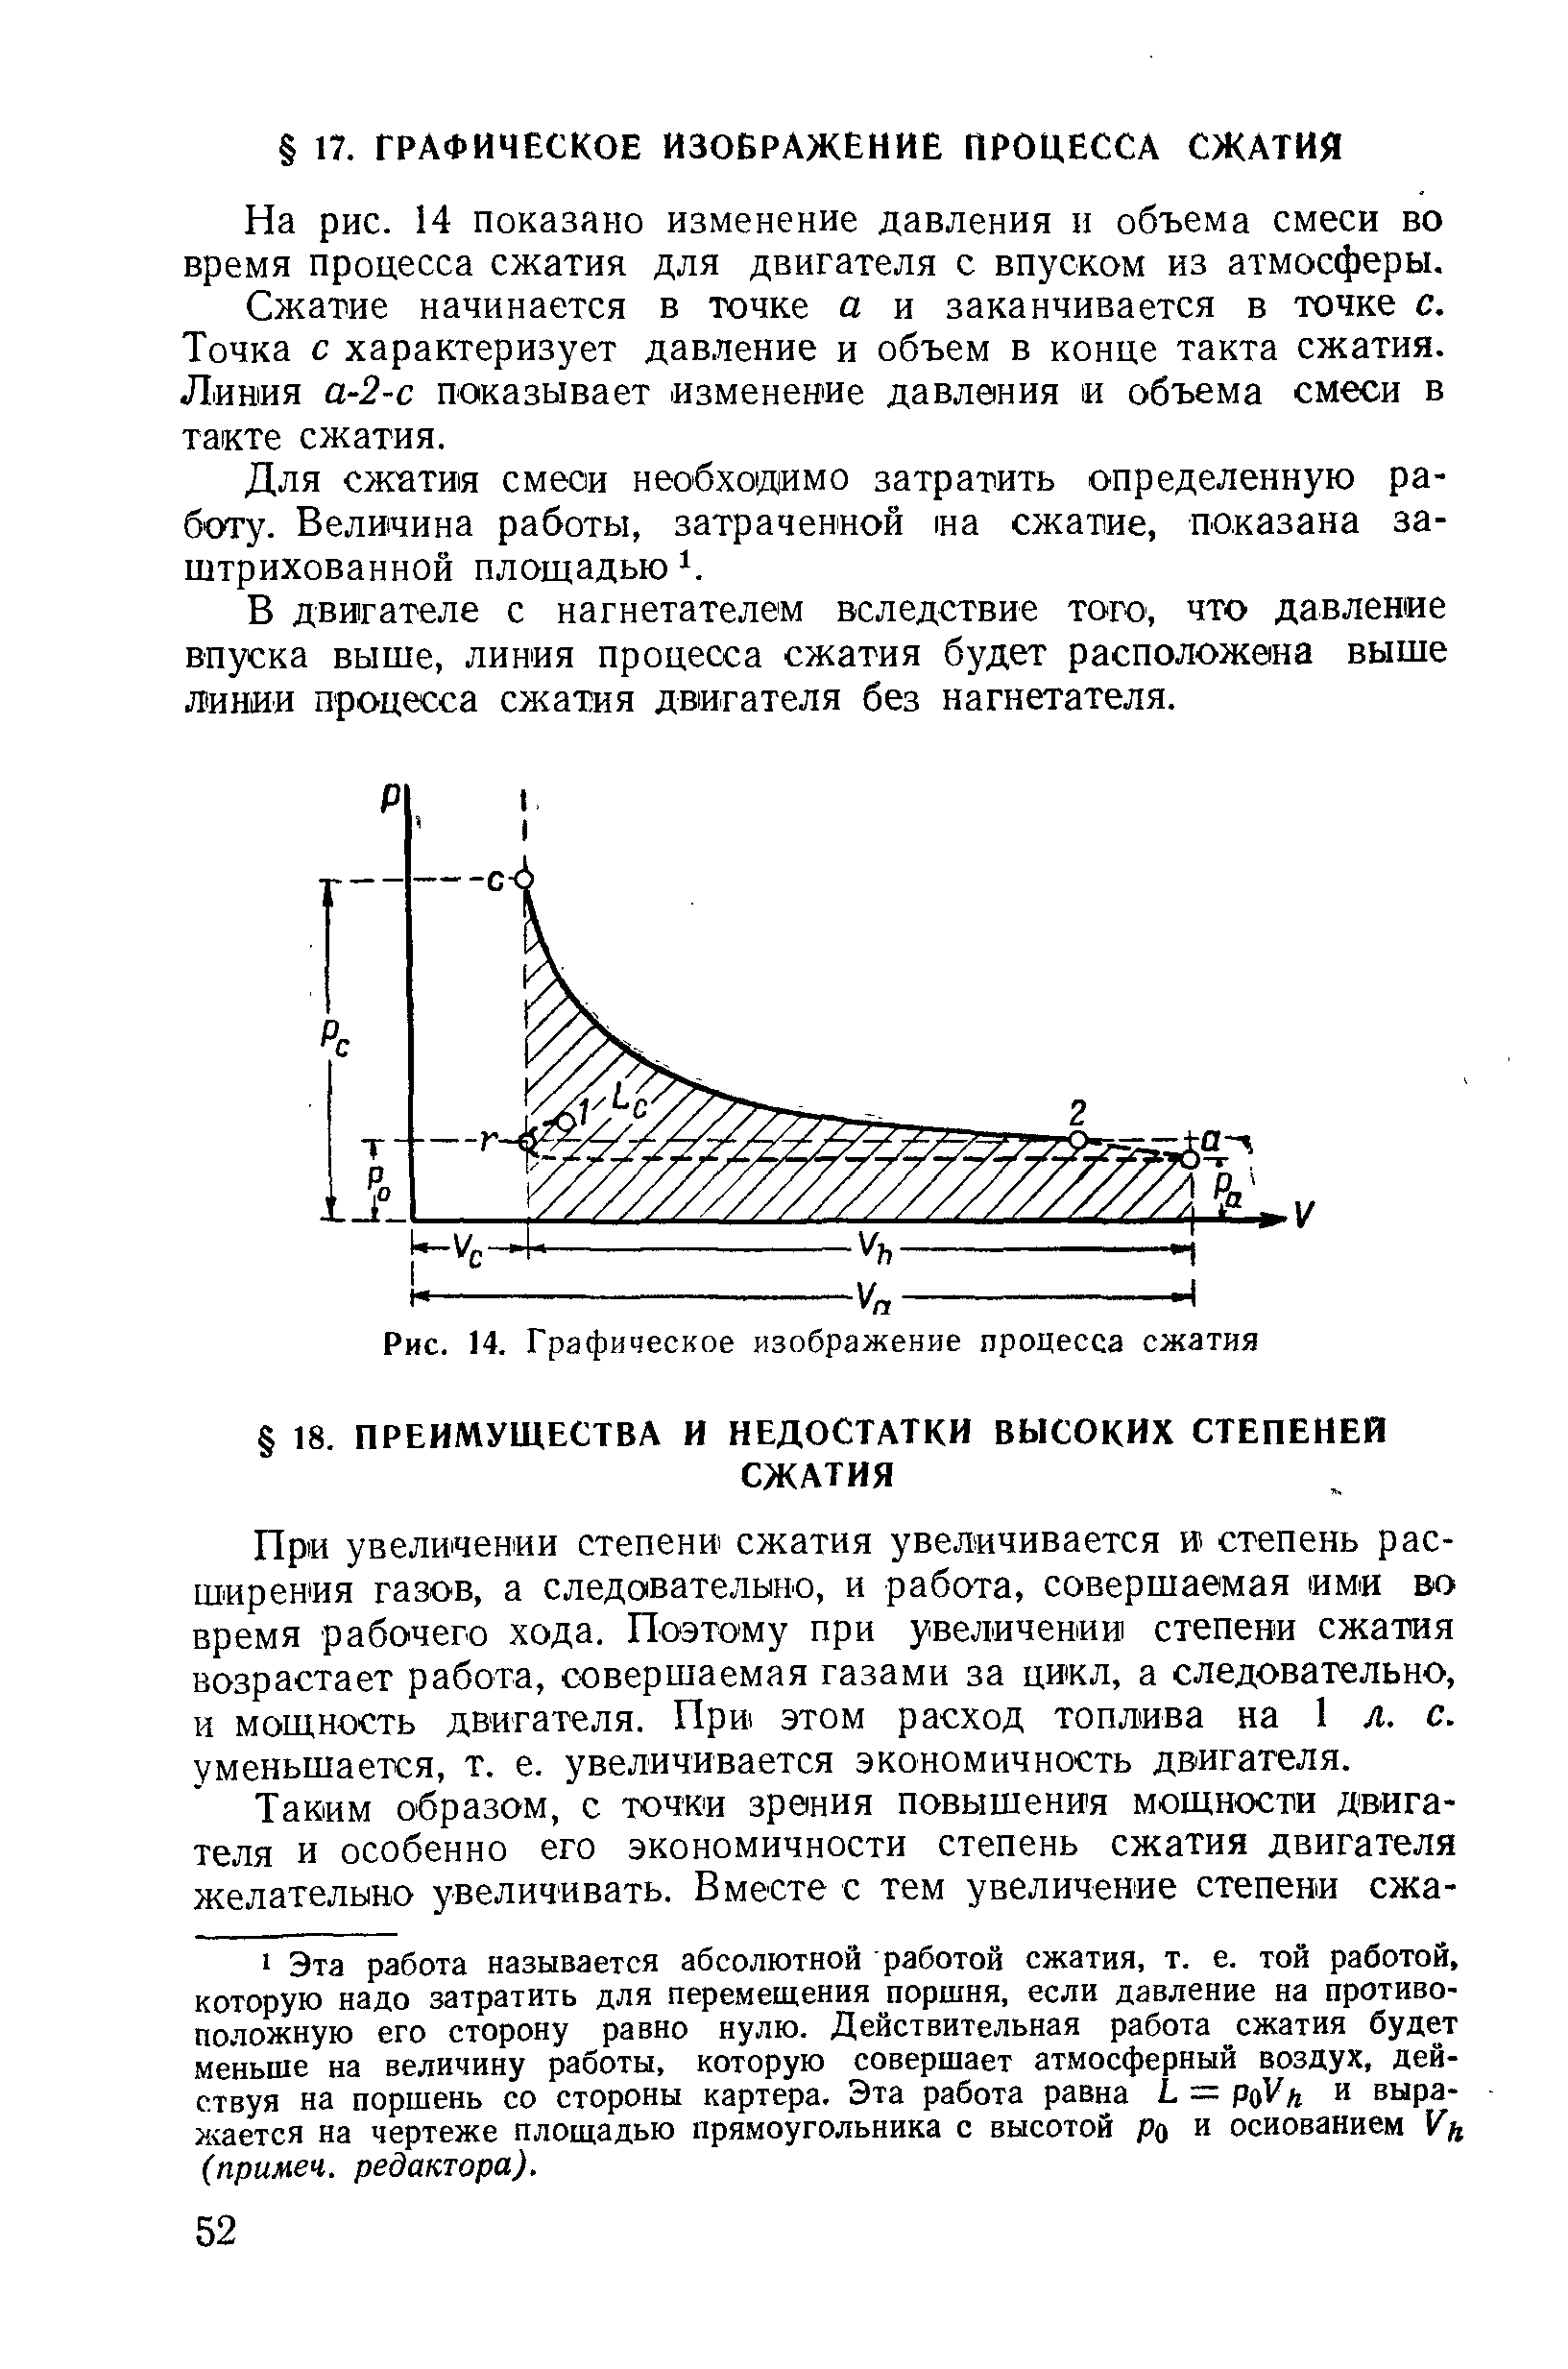 На рис. 14 показано изменение давления н объема смеси во время процесса сжатия для двигателя с впуском из атмосферы.
